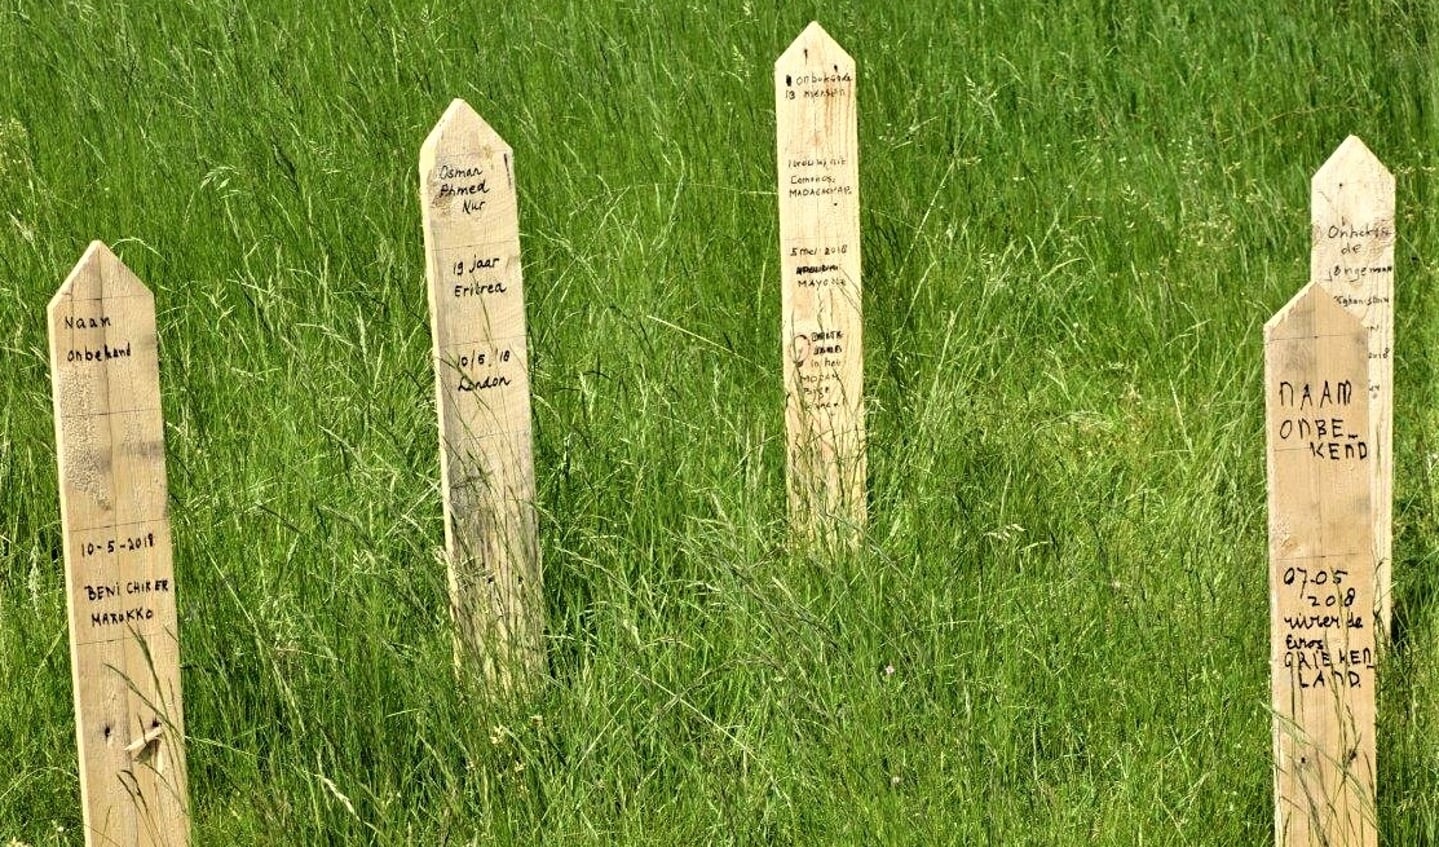 Deze herdenkingspaaltjes zijn geplaatst in de tuin van de Oude kerk aan de Herenstraat in Voorburg (foto: Ap de Heus).